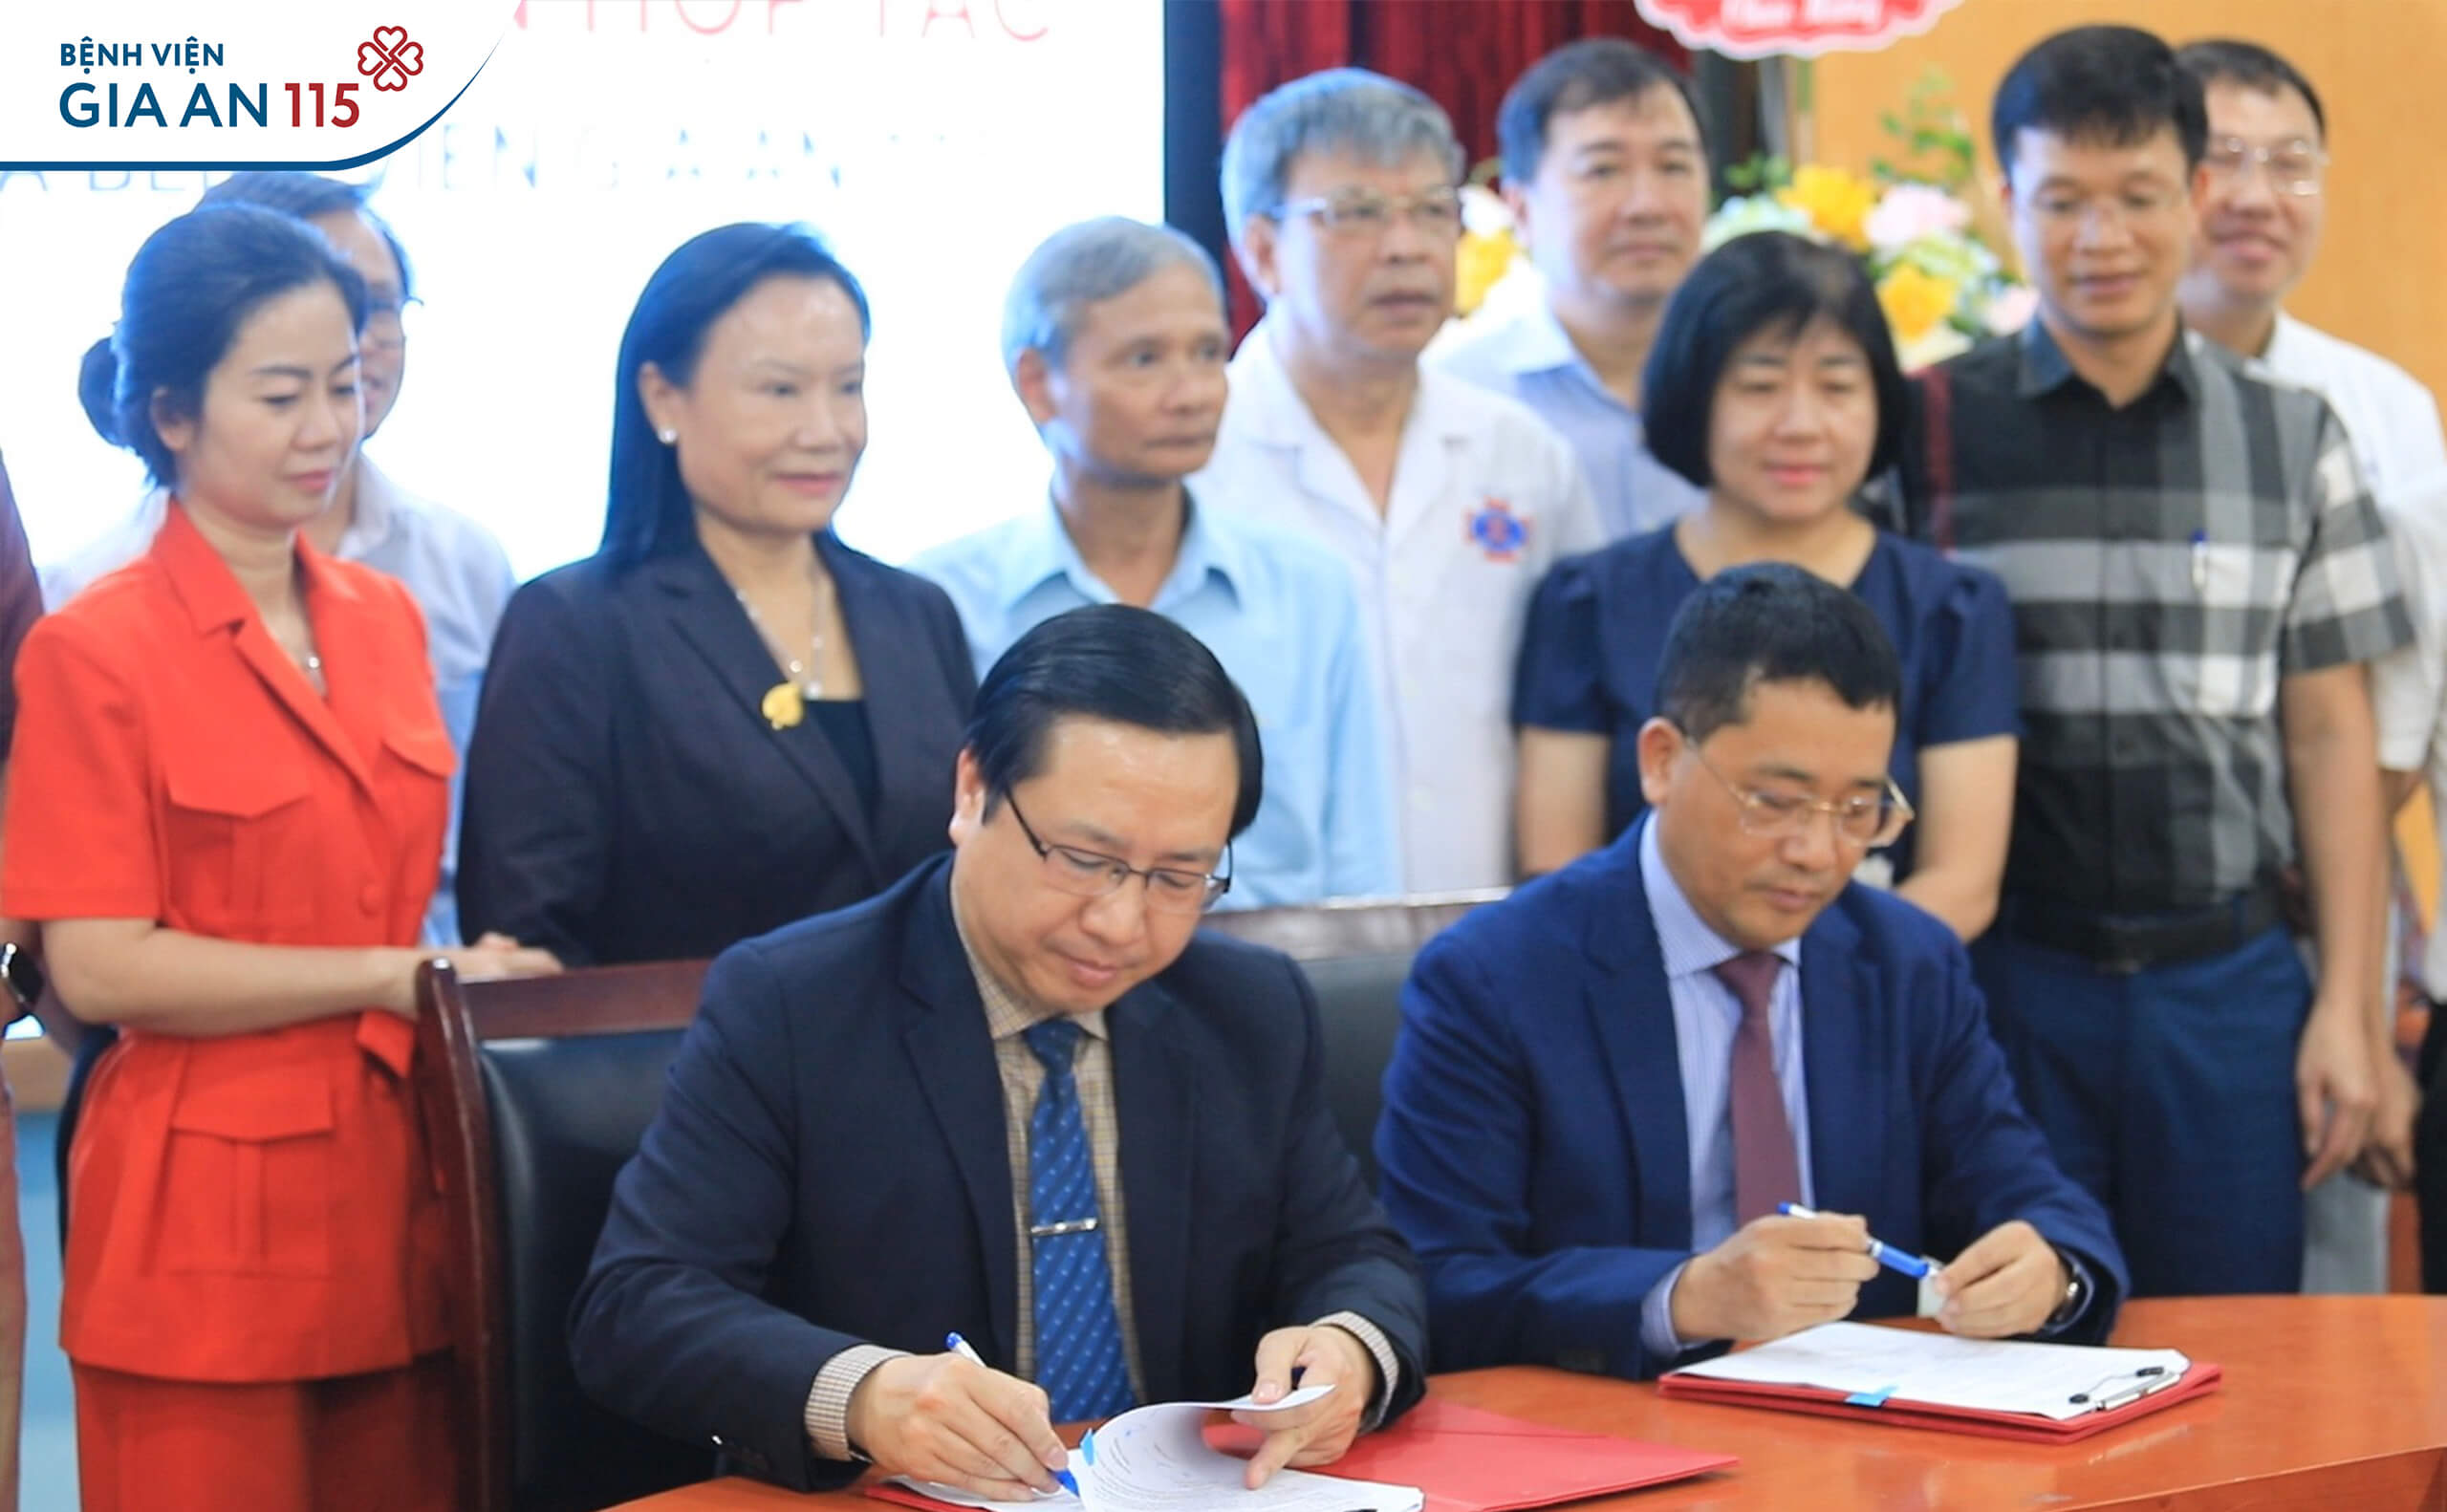 TS.BS Trương Vĩnh Long – Giám đốc Bệnh viện Gia An 115 và GS.TS.BS Lê Văn Quảng - Giám đốc Bệnh viện K ký kết thỏa thuận hợp tác